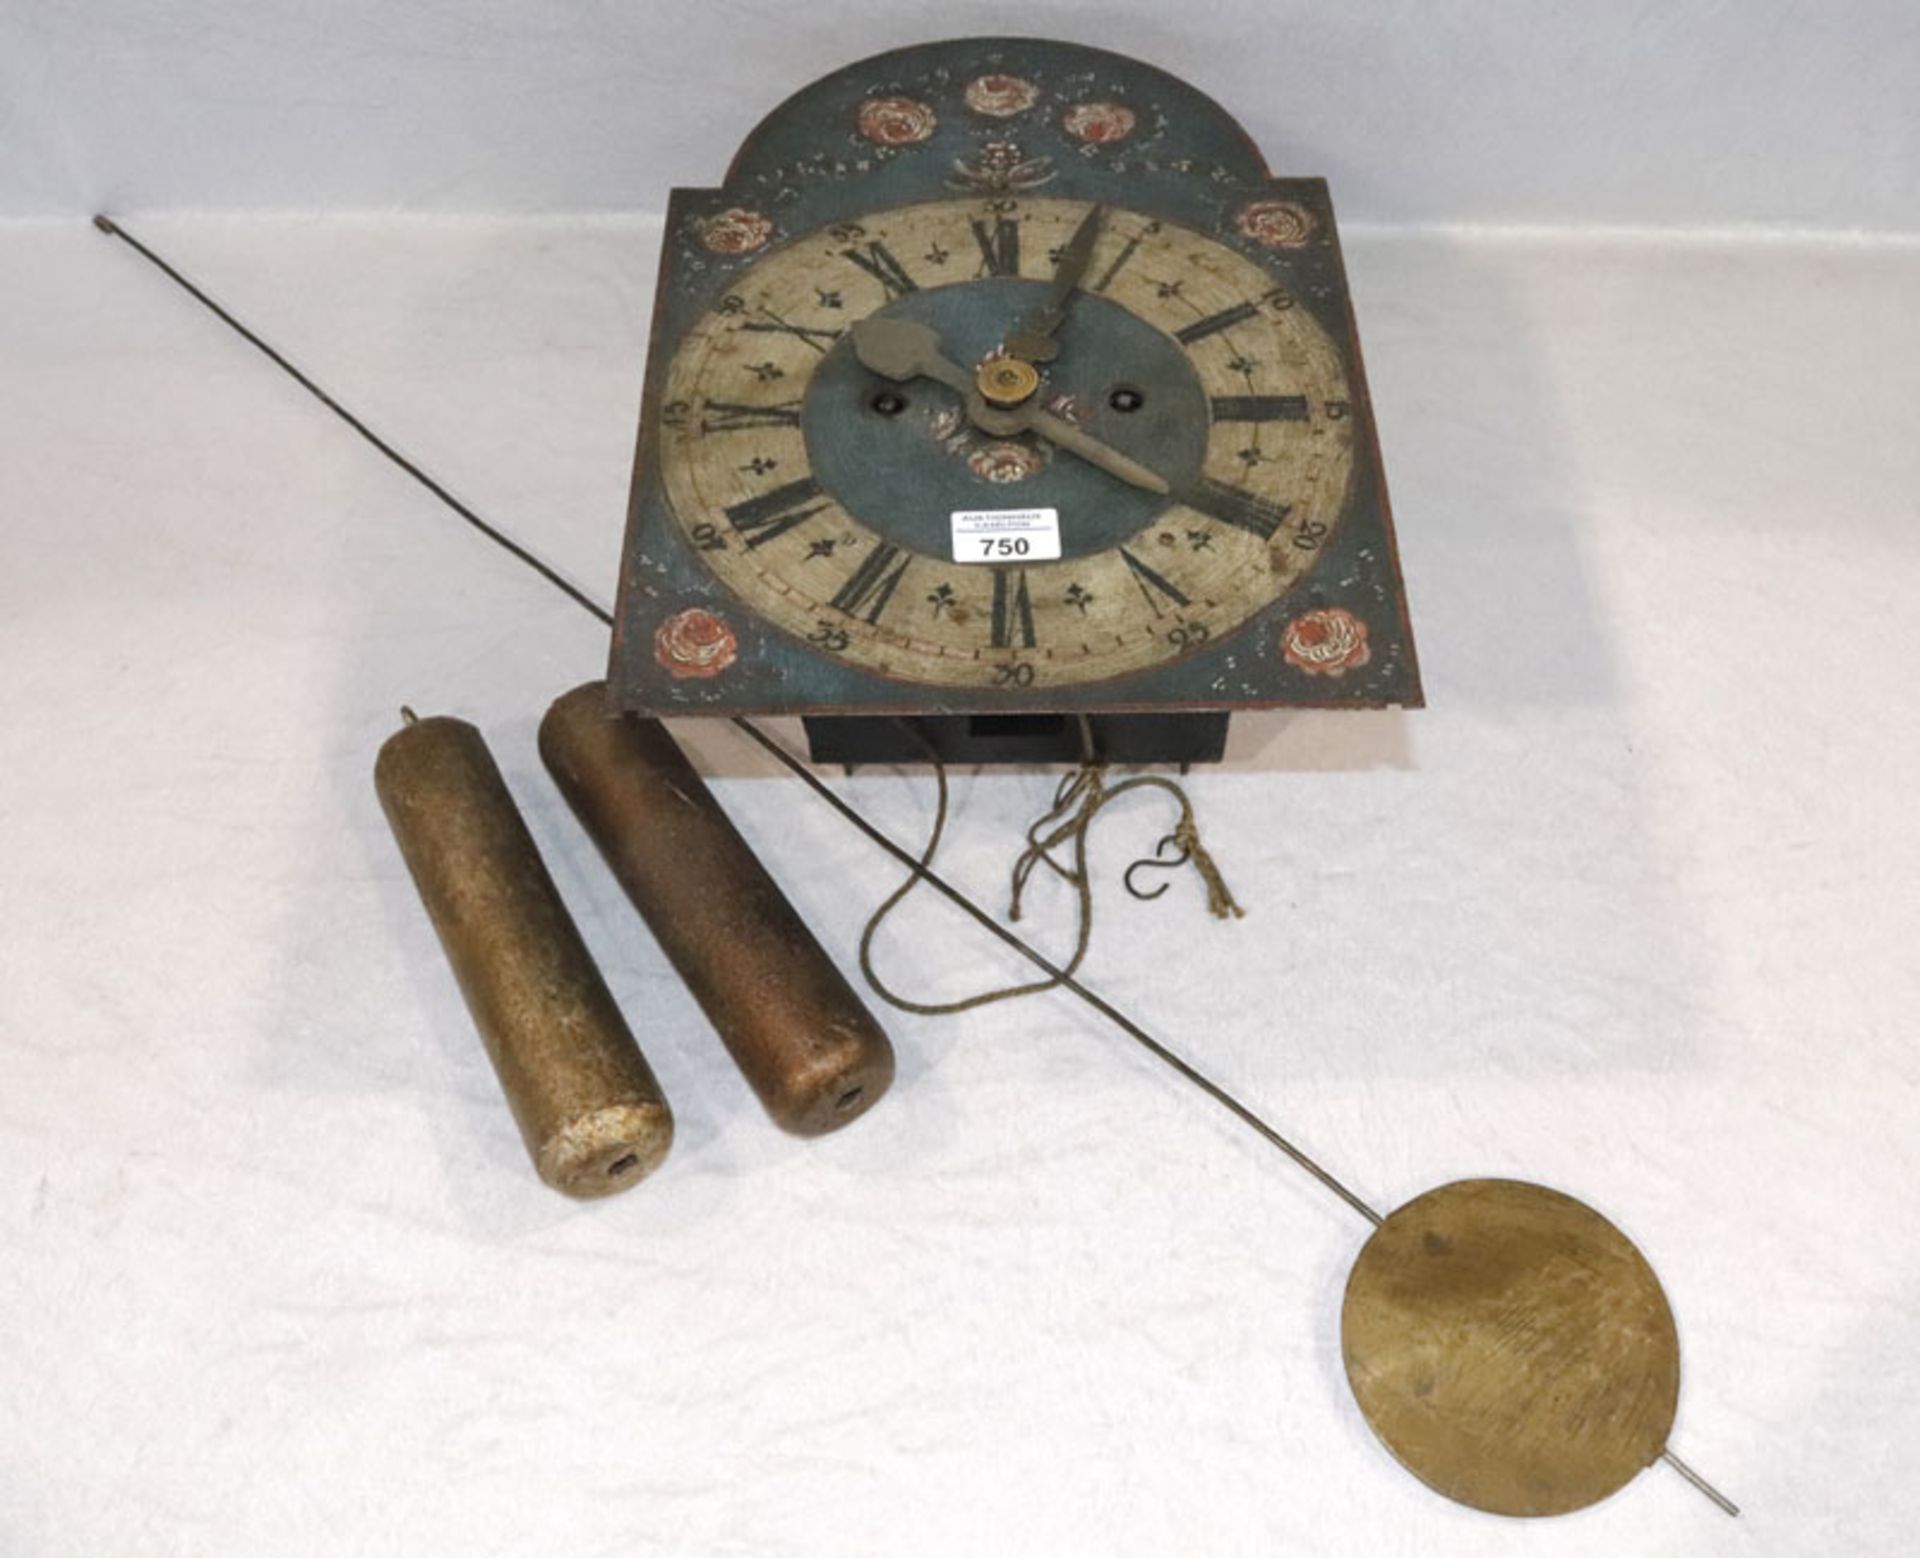 Eisen Wanduhr, Zifferblatt mit Rosenmalerei, Pendel und 2 Gewichte, Glockenschlag, Funktion nicht